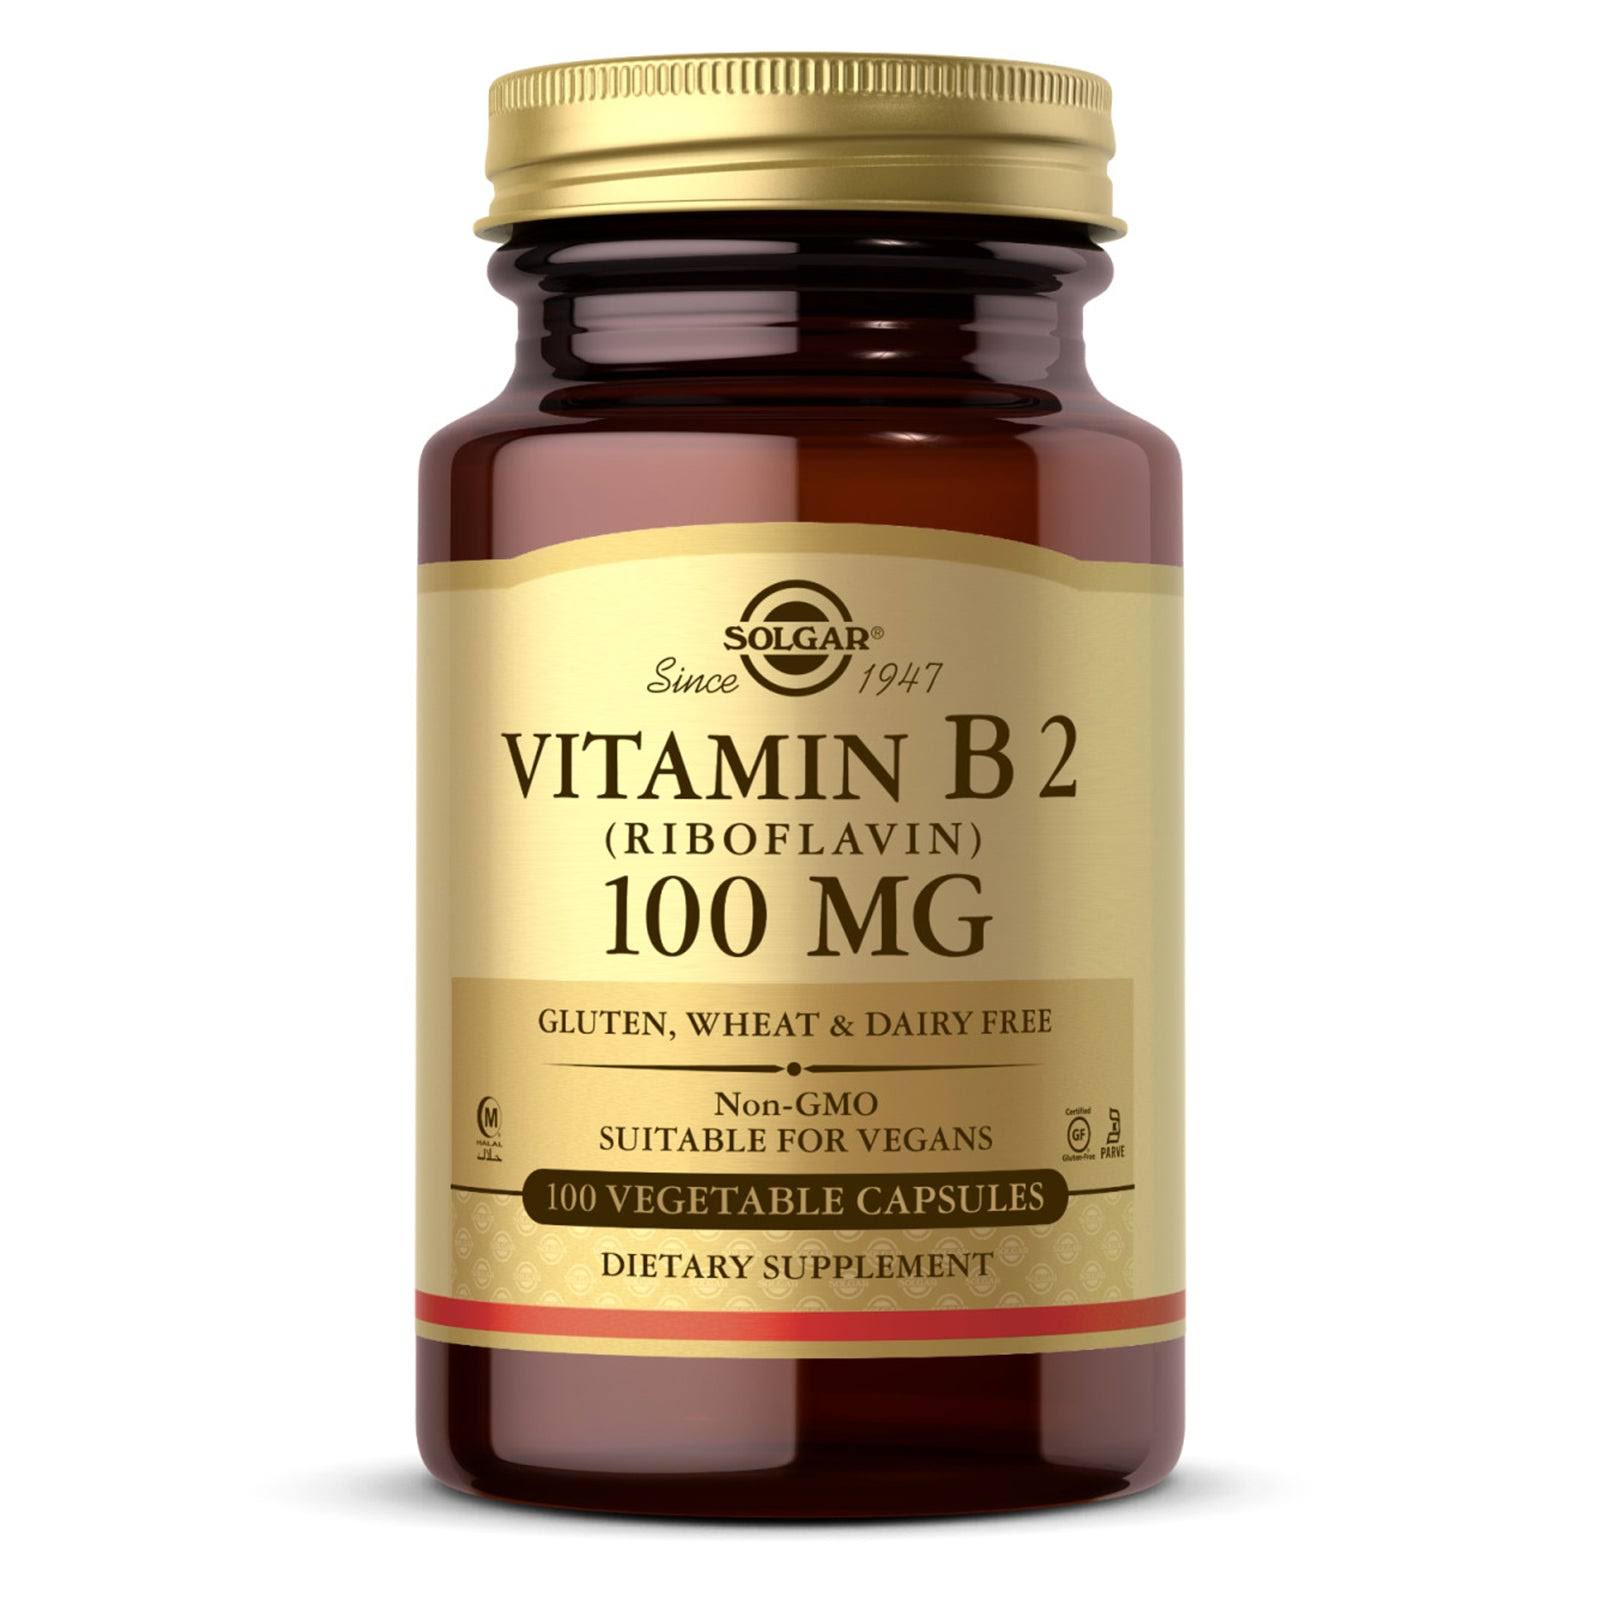 Solgar Vitamin B2 - 100 mg, 100 capsules